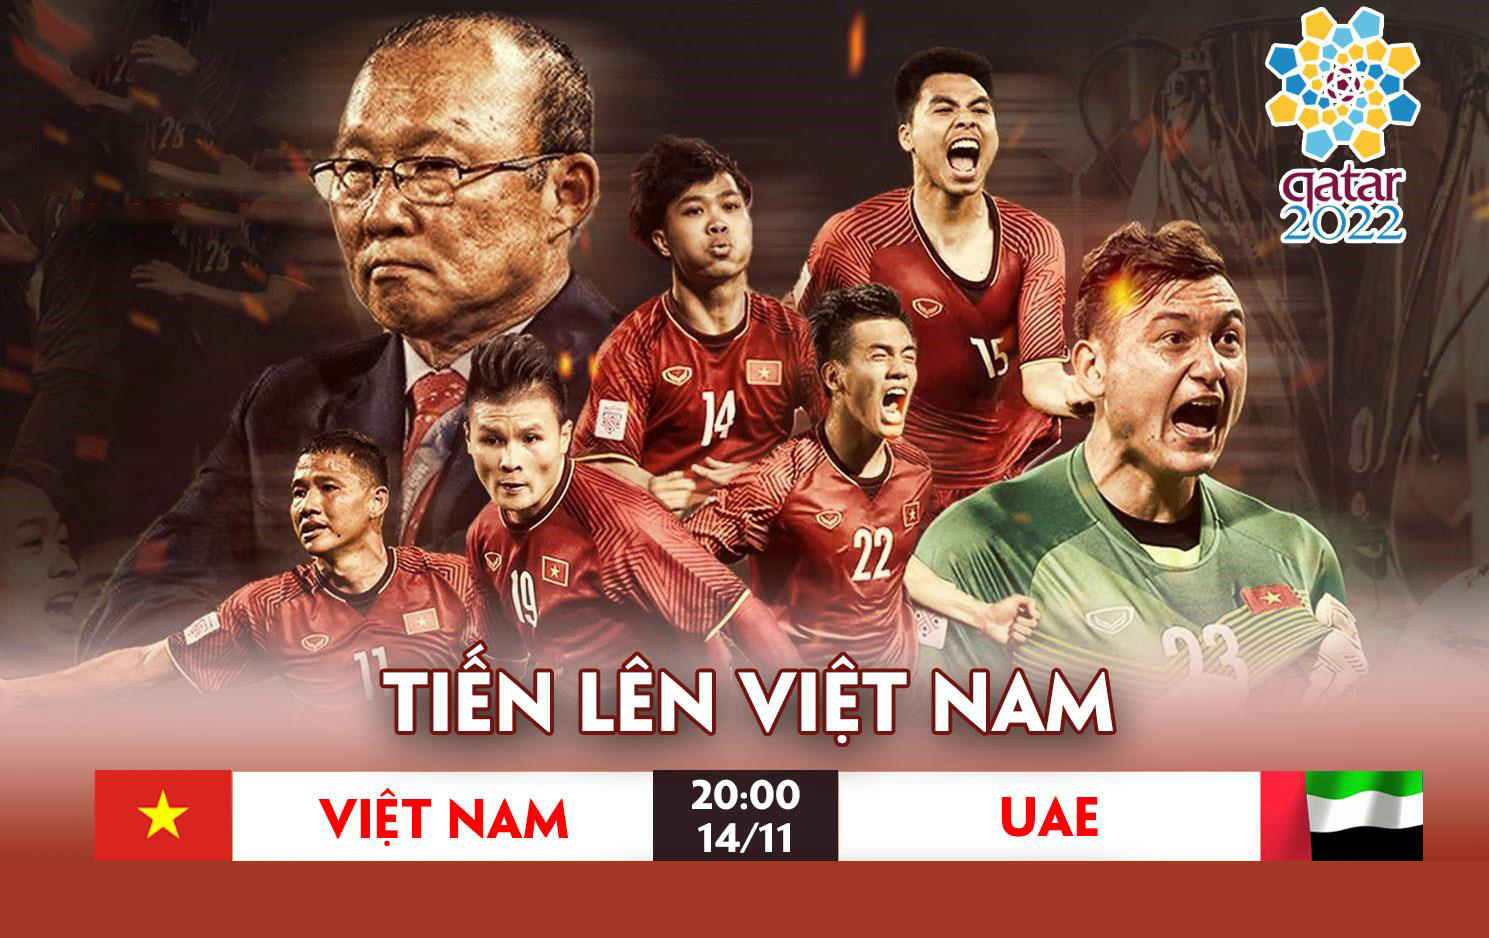 Việt Nam 2 - 1 UAE | Quang Hải lập siêu phẩm, Việt Nam đả ...